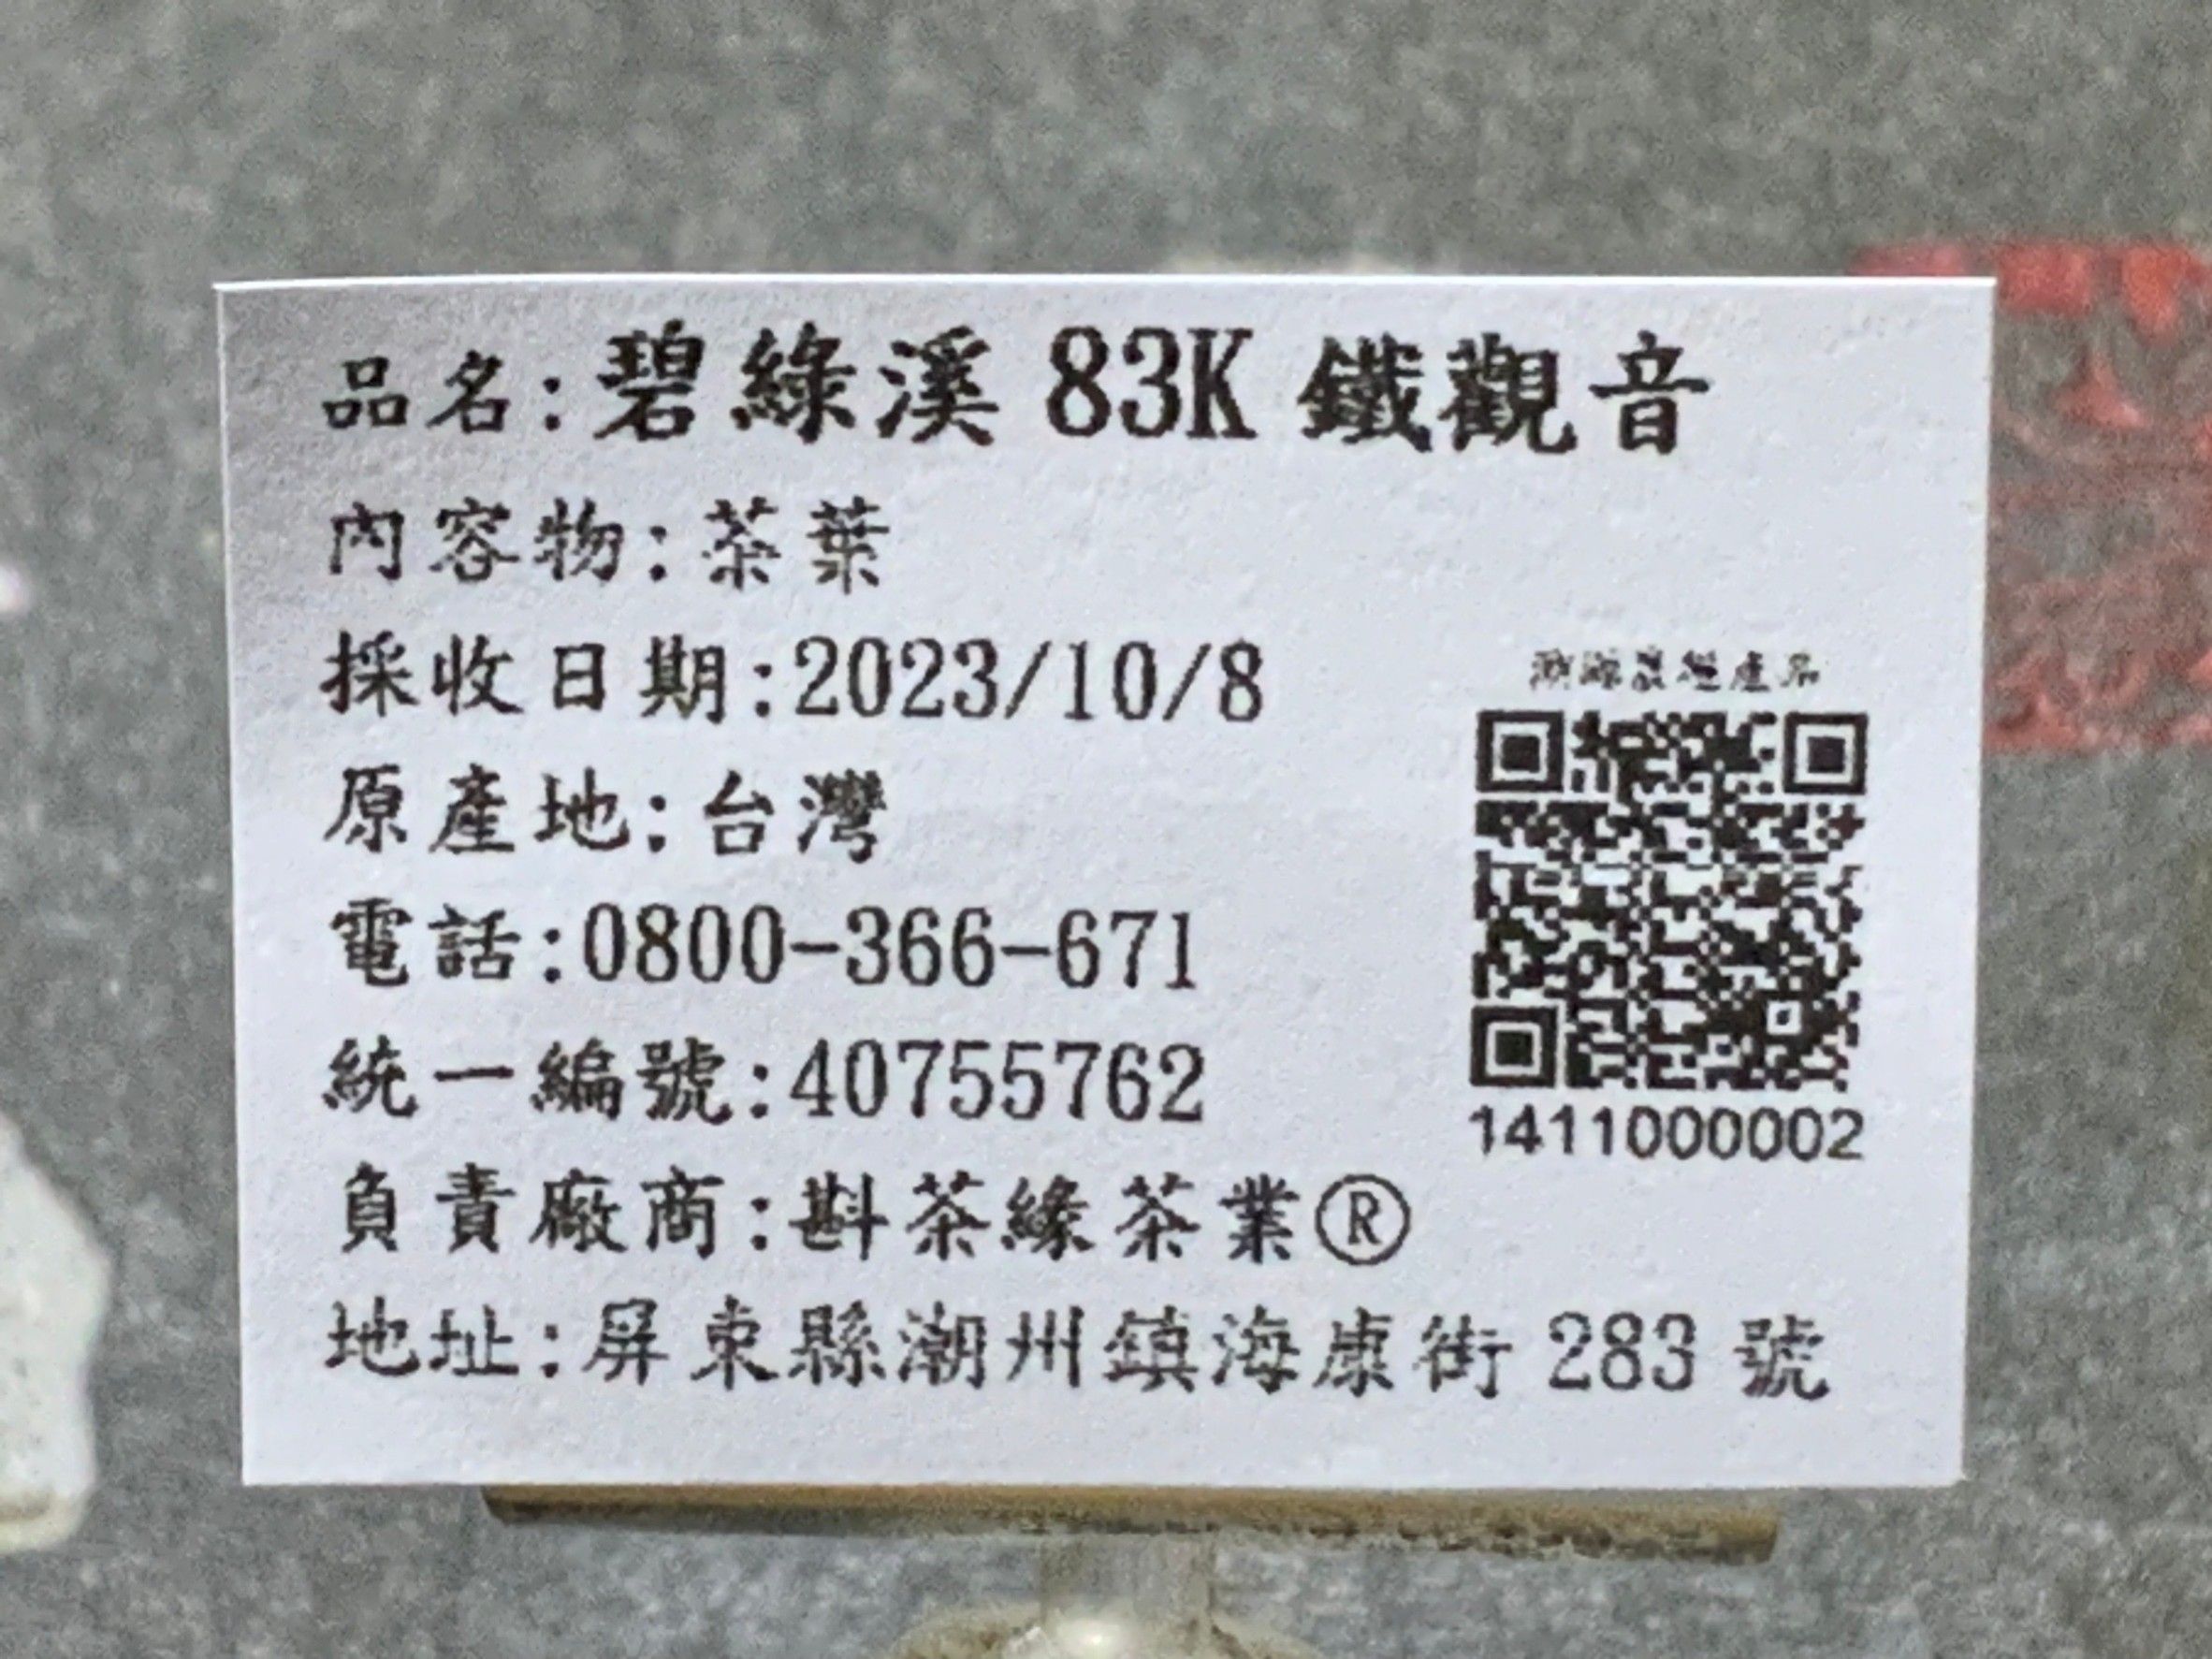 【斟茶緣】2023年碧綠溪83K全台灣最強鐵觀音中的『皇帝』冬茶（10月8日採收）  1斤4300元 2兩的2包1075